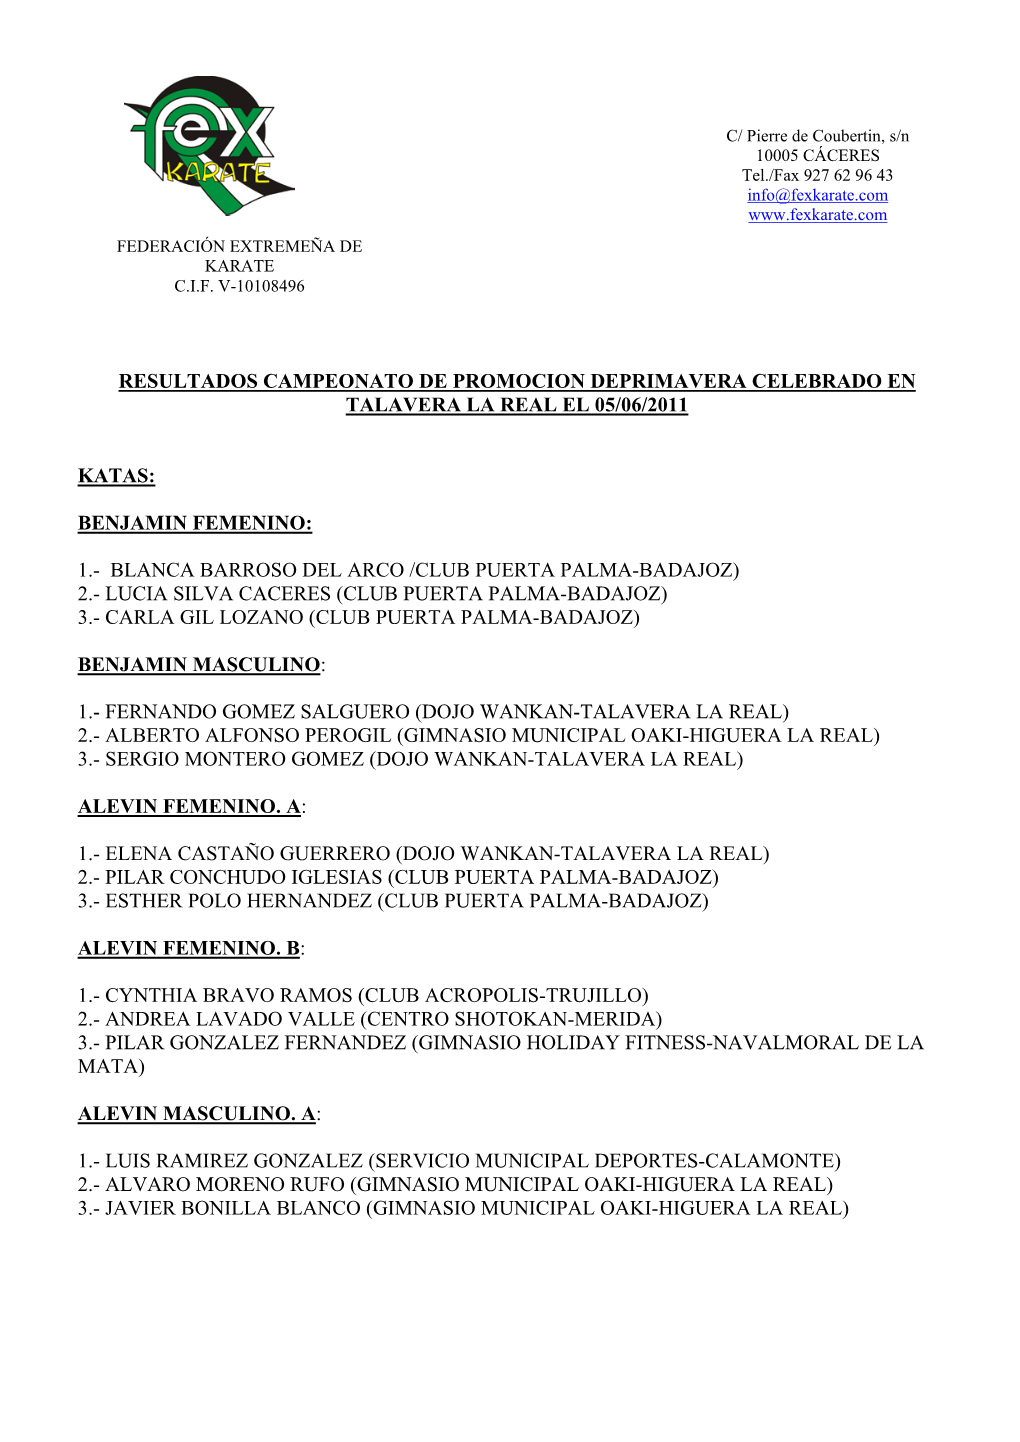 Resultados Campeonato De Promocion Deprimavera Celebrado En Talavera La Real El 05/06/2011